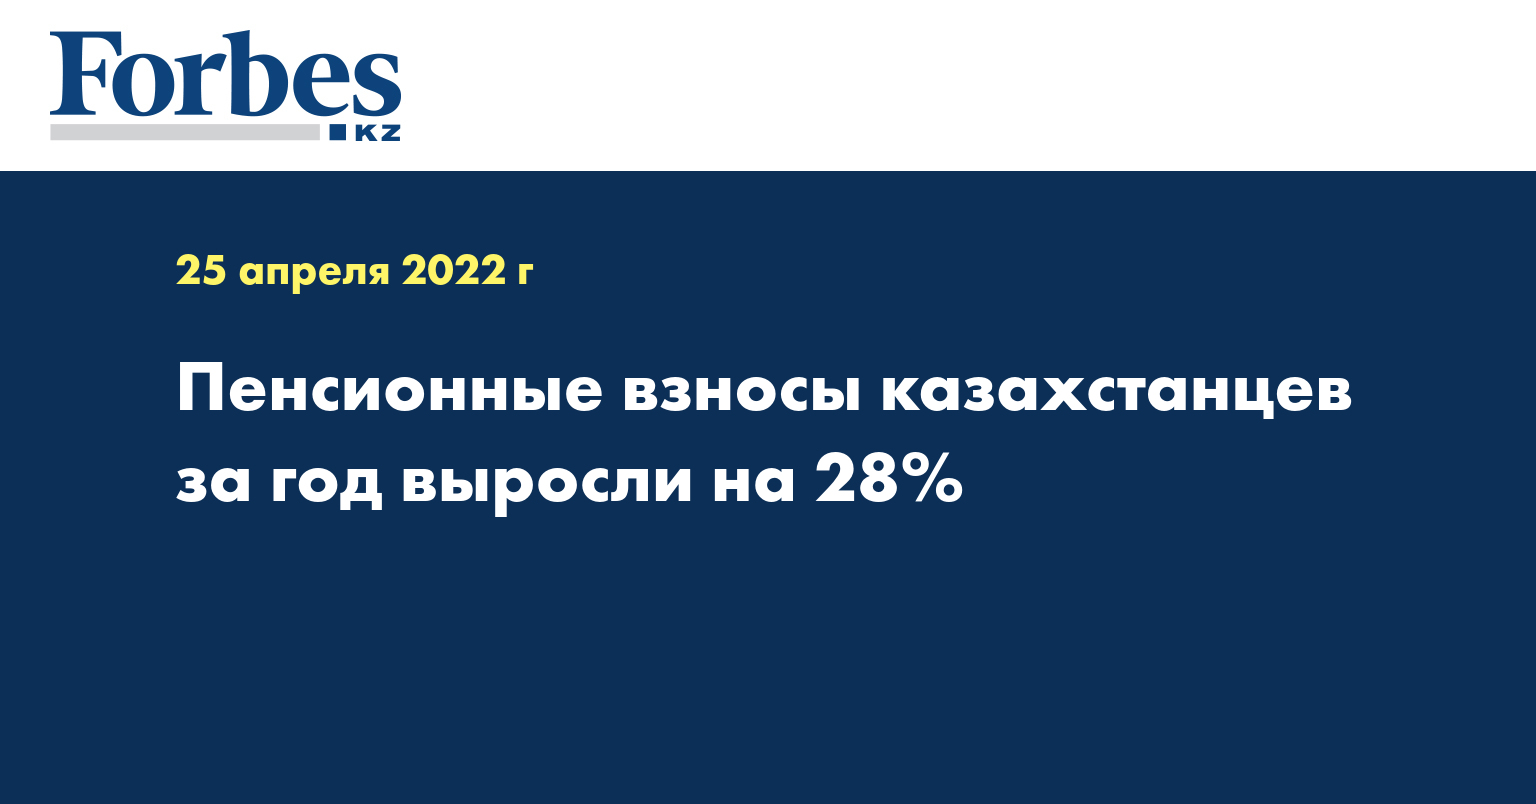  Пенсионные взносы казахстанцев за год выросли на 28%